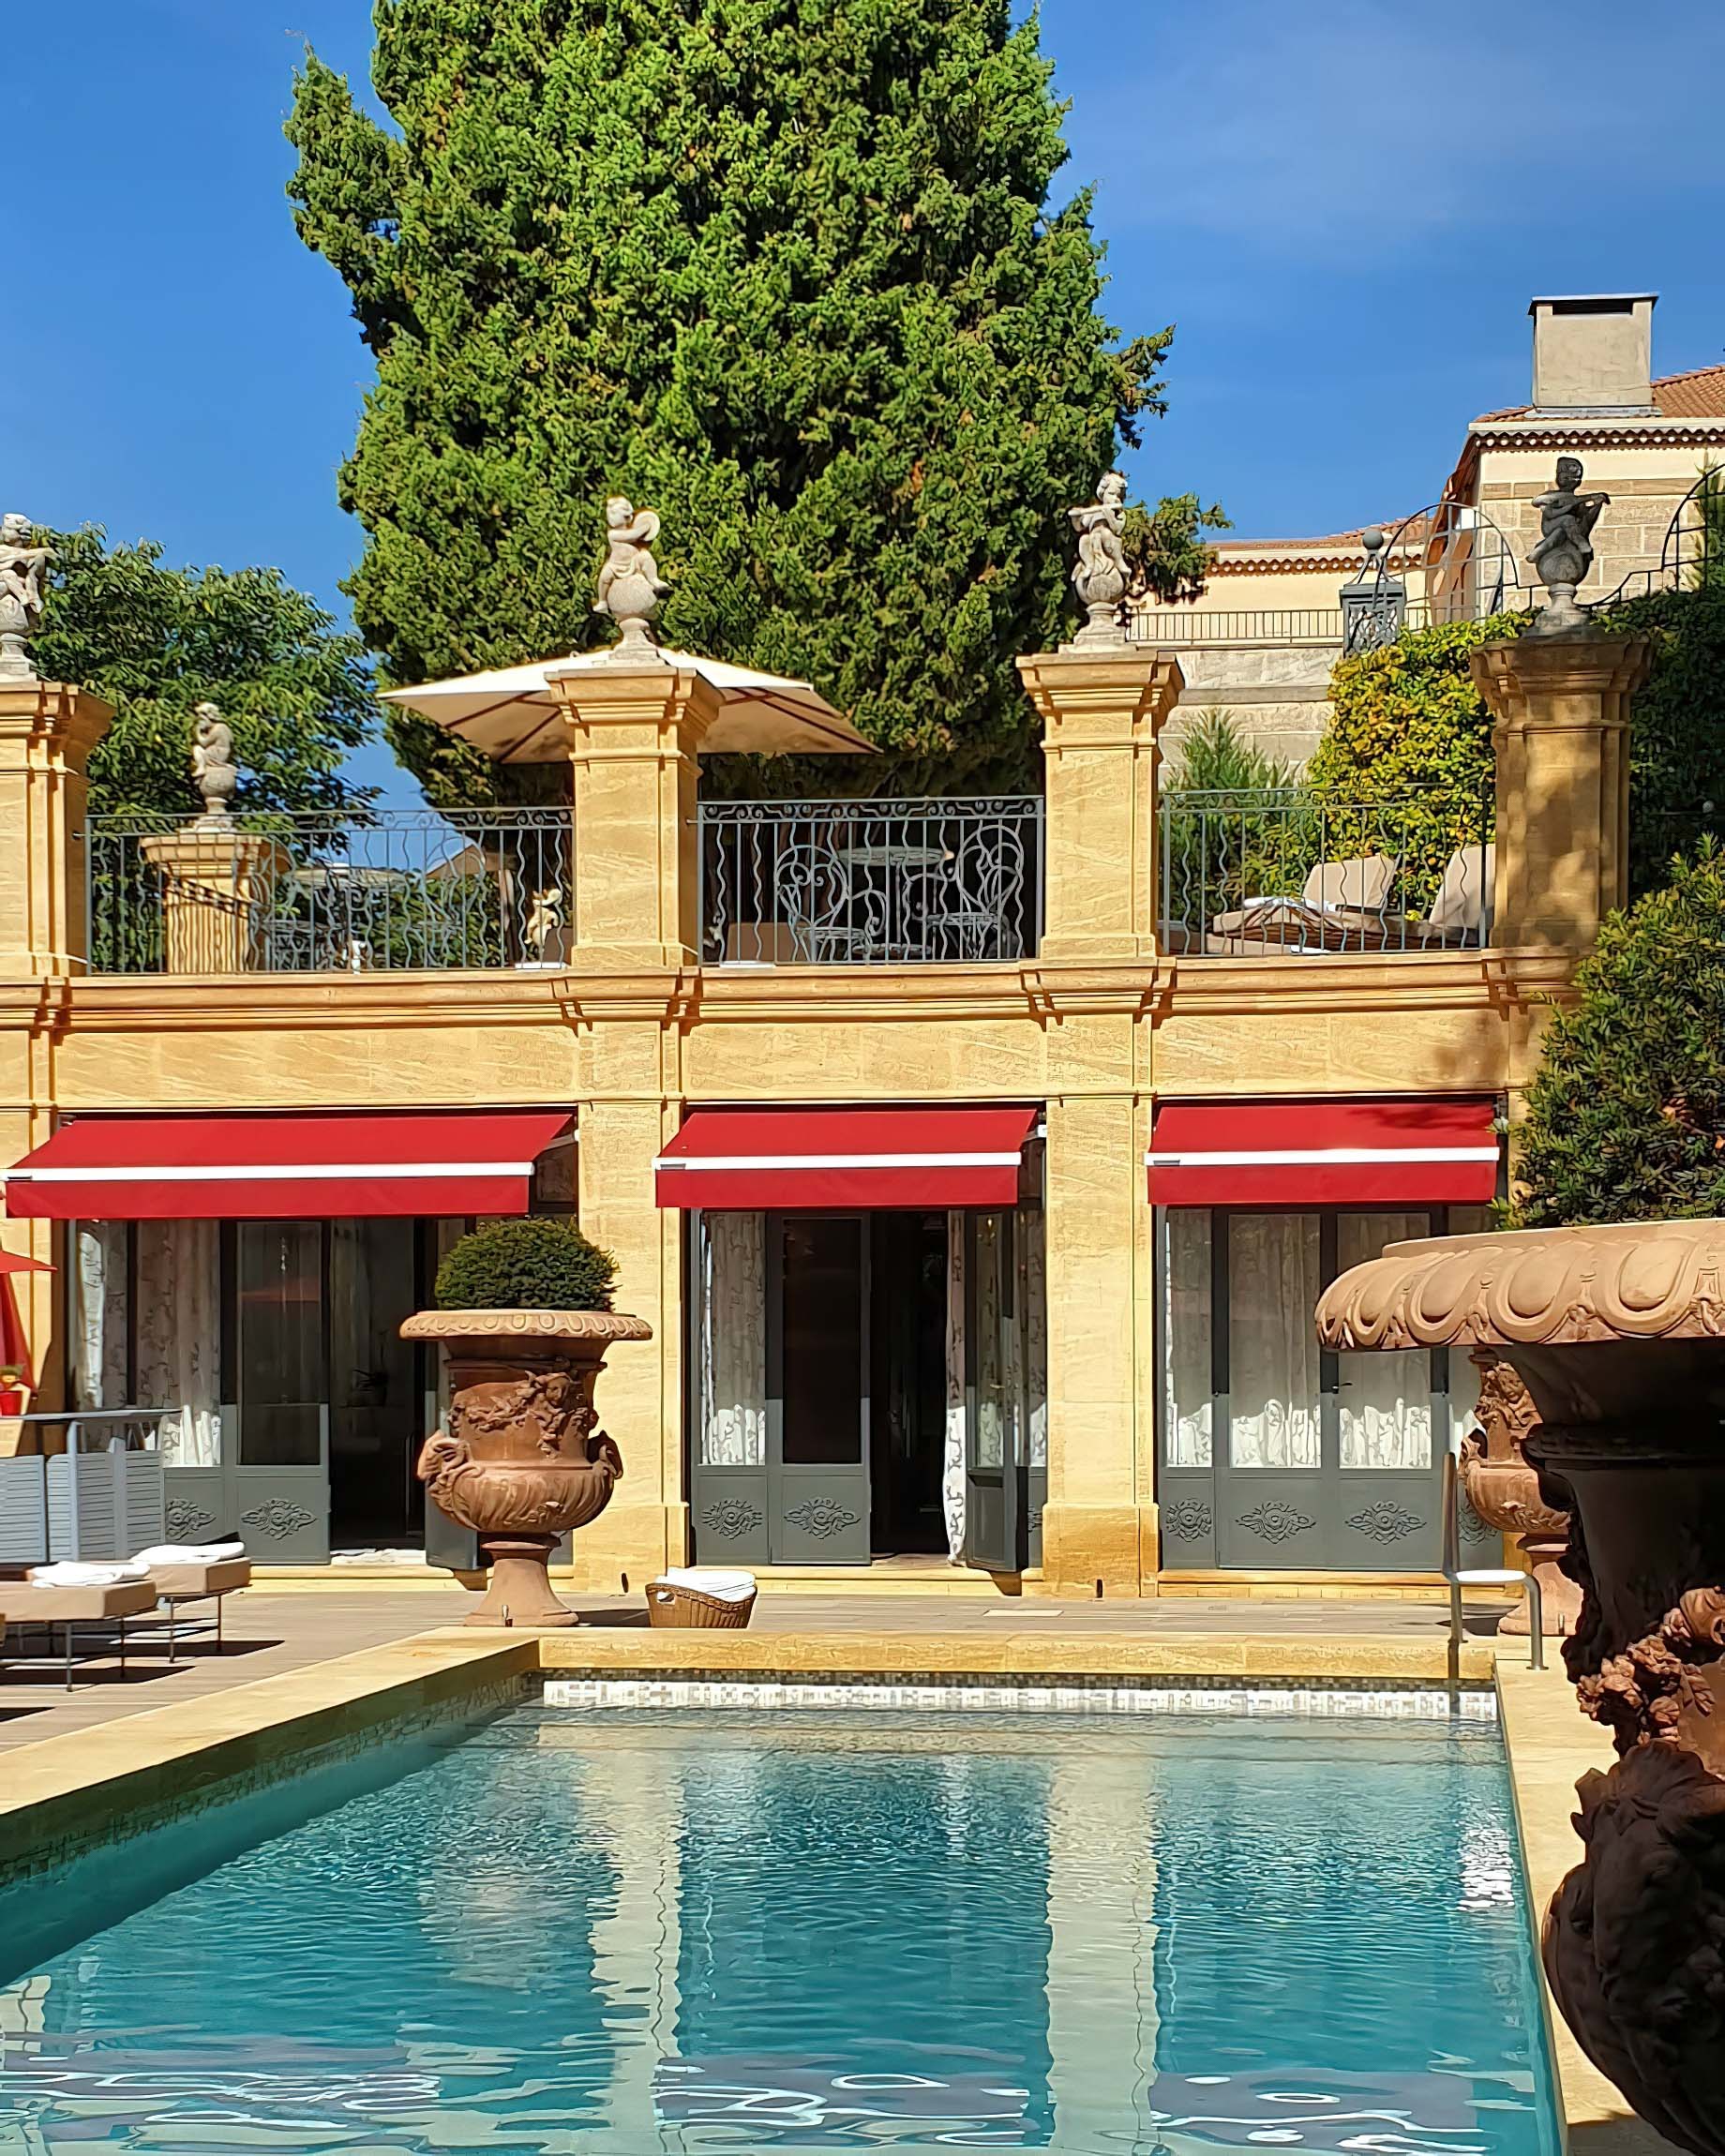 Villa Gallici Relais Châteaux Hotel – Aix-en-Provence, France – Pool Deck and Terrace